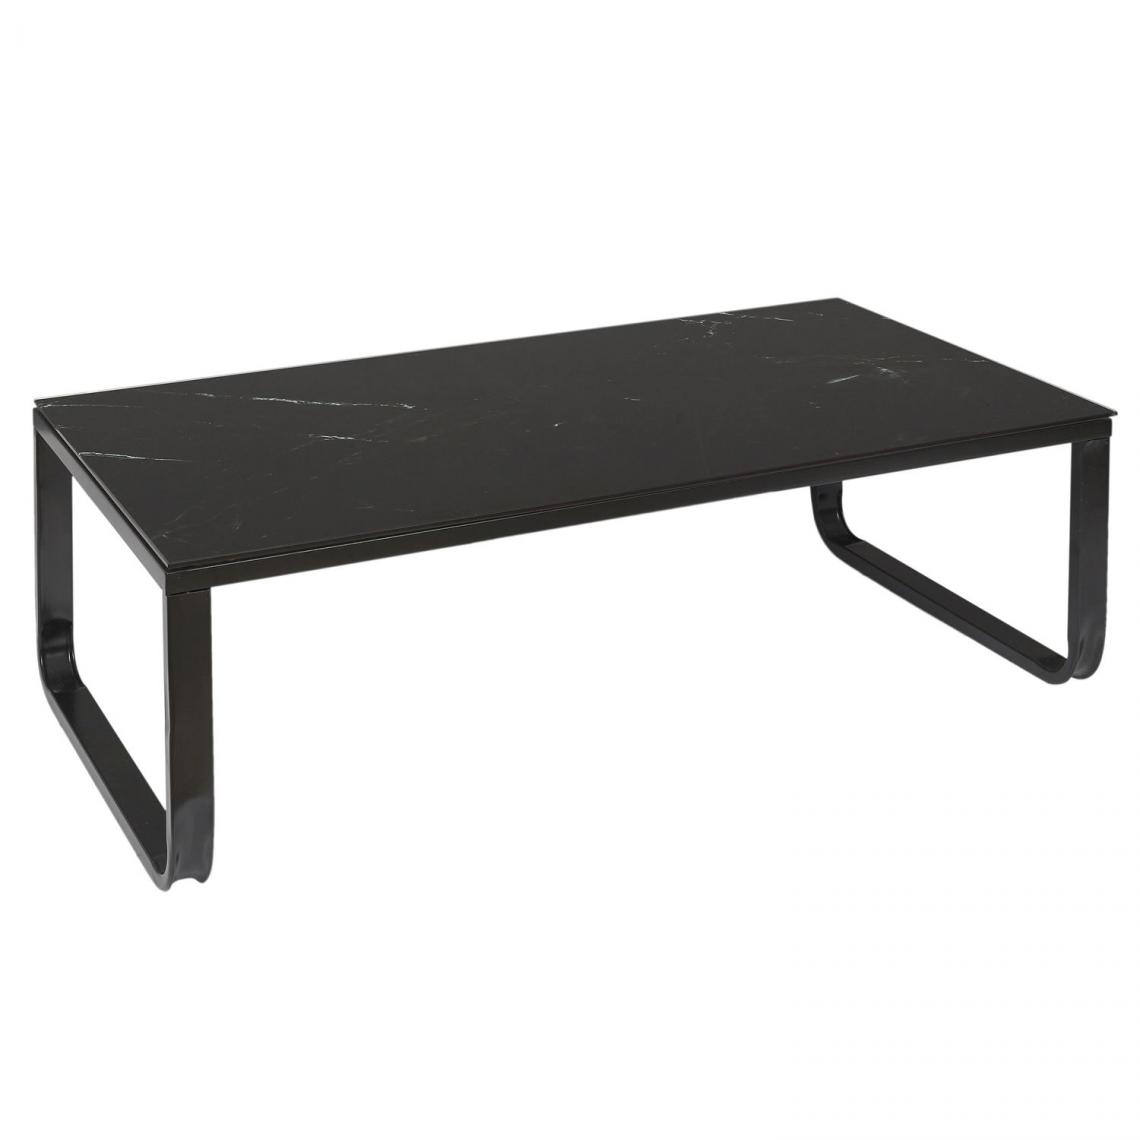 Toilinux - Table basse en verre effet marbre - Noir - Tables basses